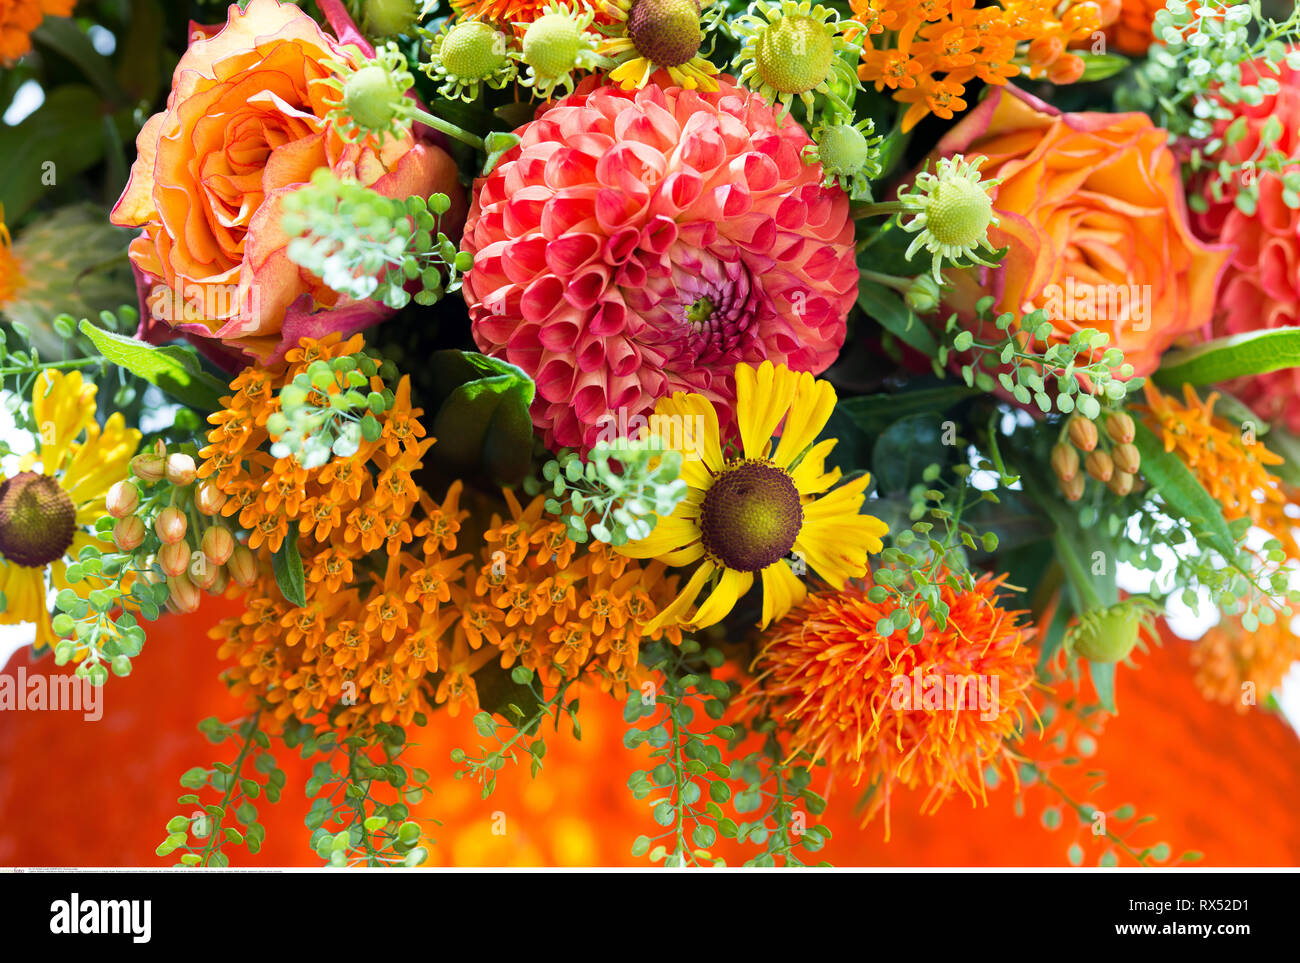 La botanica, in autunno il mazzetto in arancione, attenzione! Per Greetingcard-Use / Postcard-Use nei Paesi di lingua tedesca talune restrizioni possono applicare Foto Stock